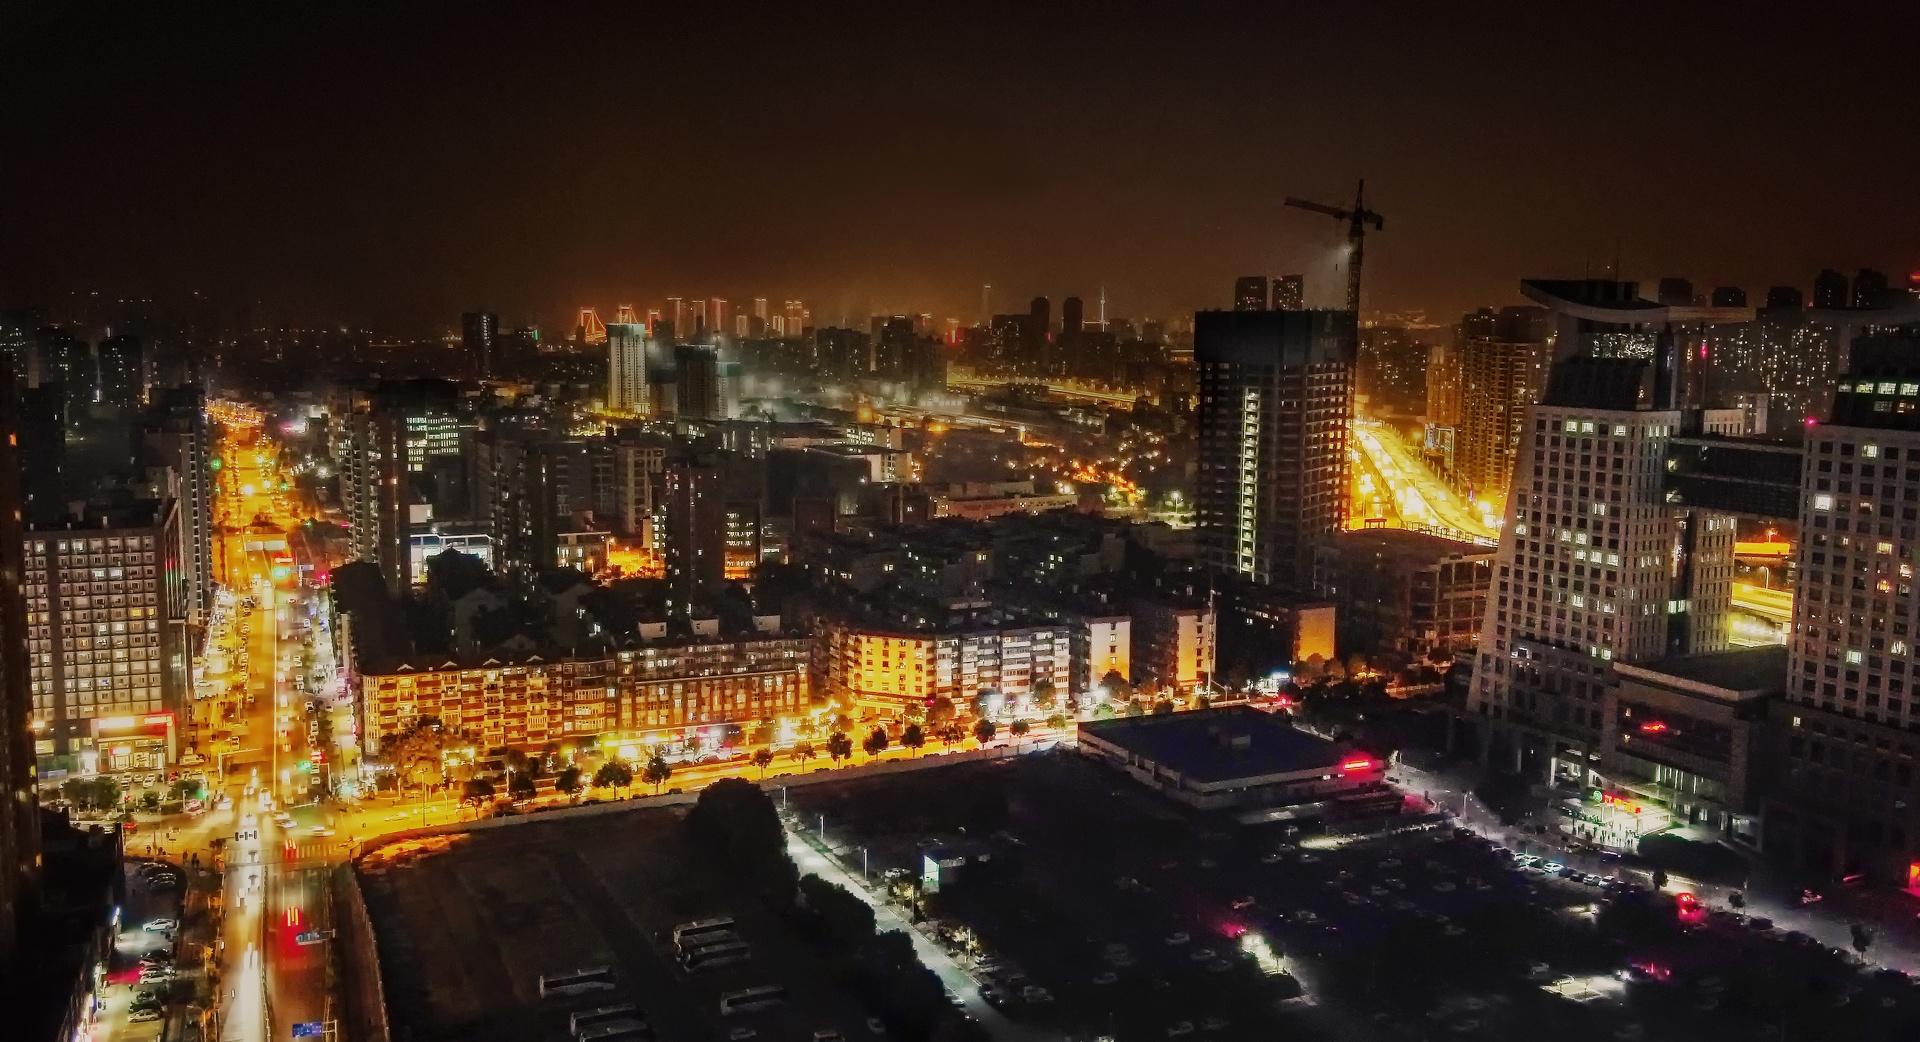 Night_at_Wuhan_China_20201213.jpg